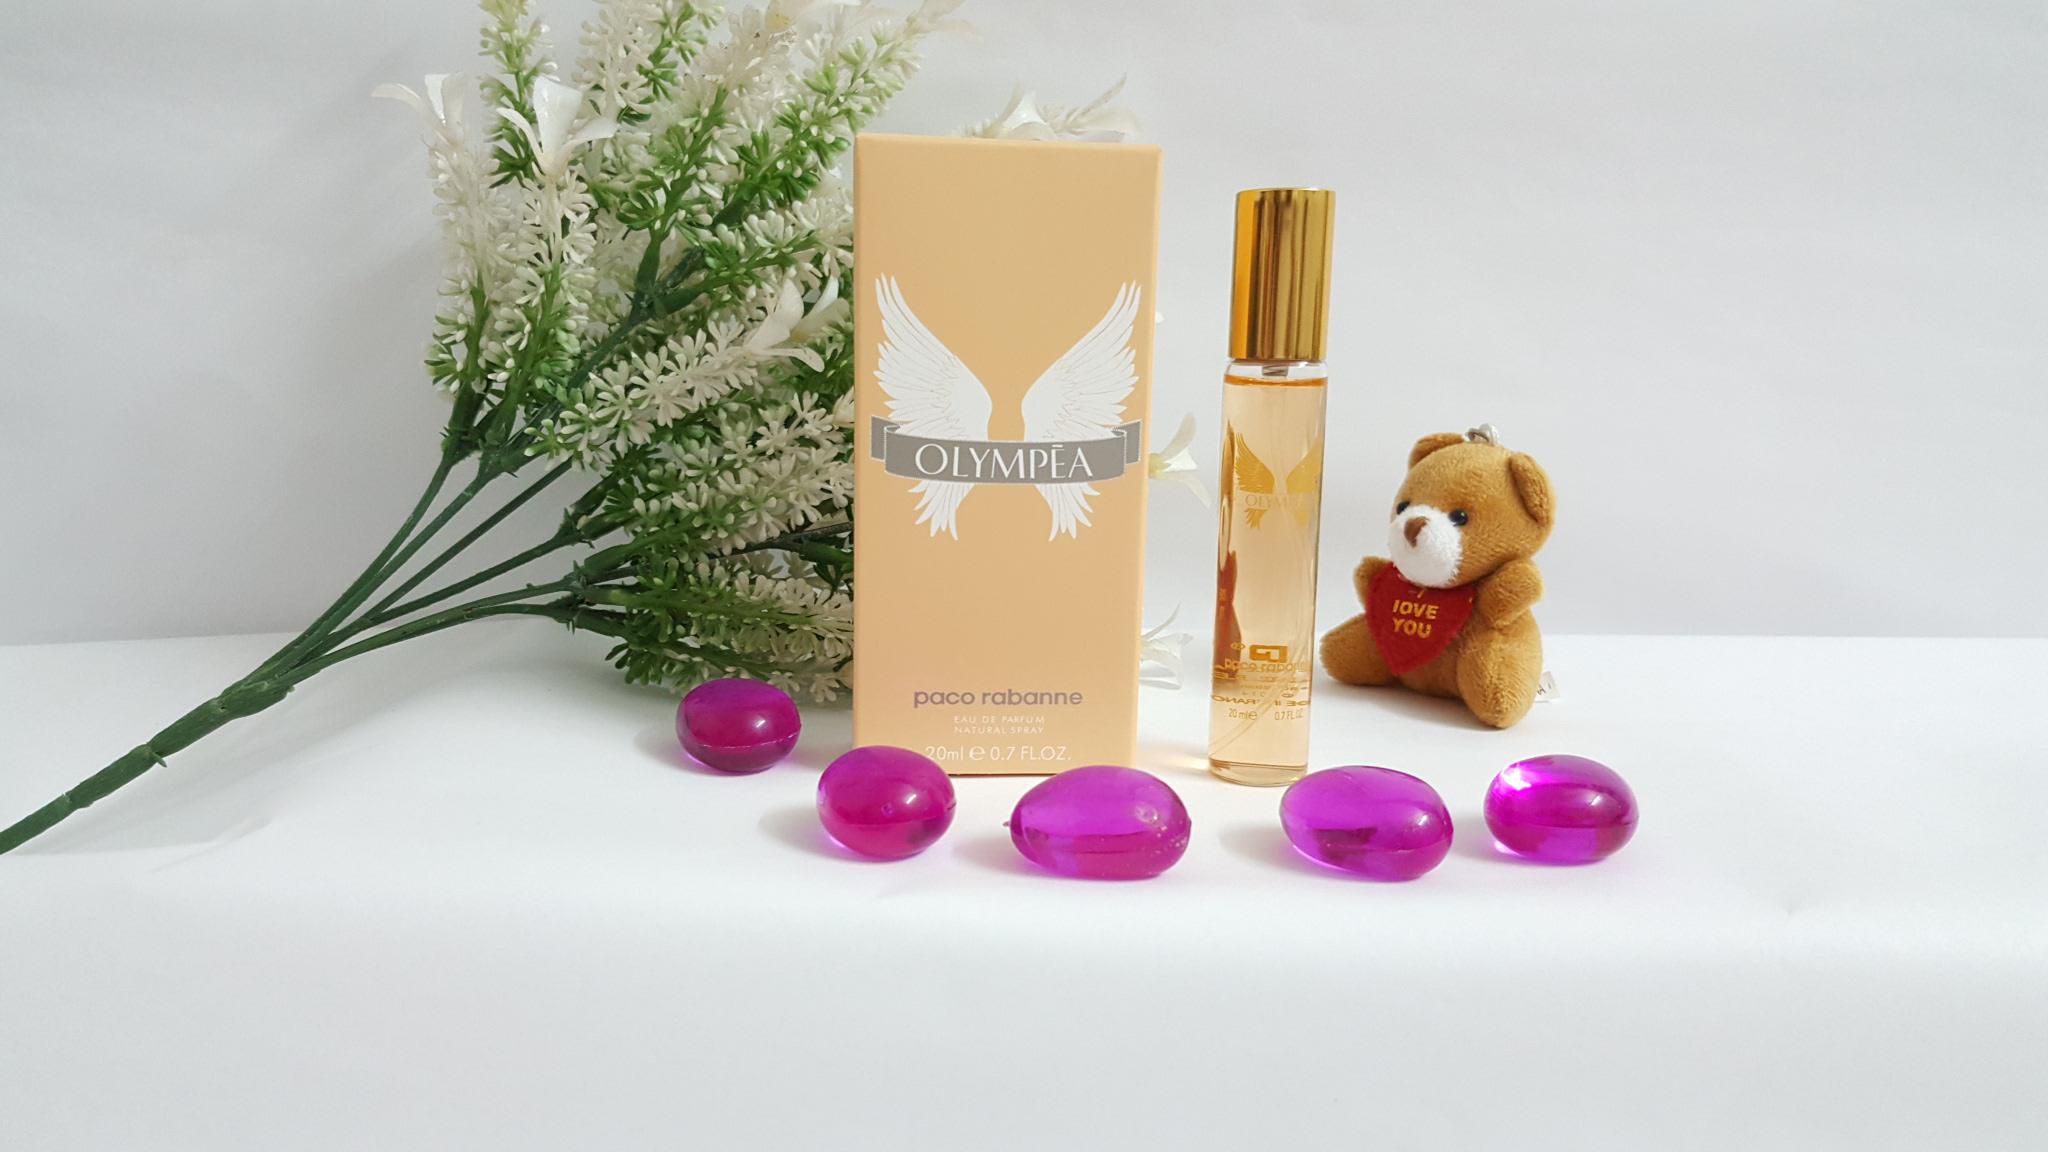 Paco Rabbanne Olympea EDP Women Perfume 20ml